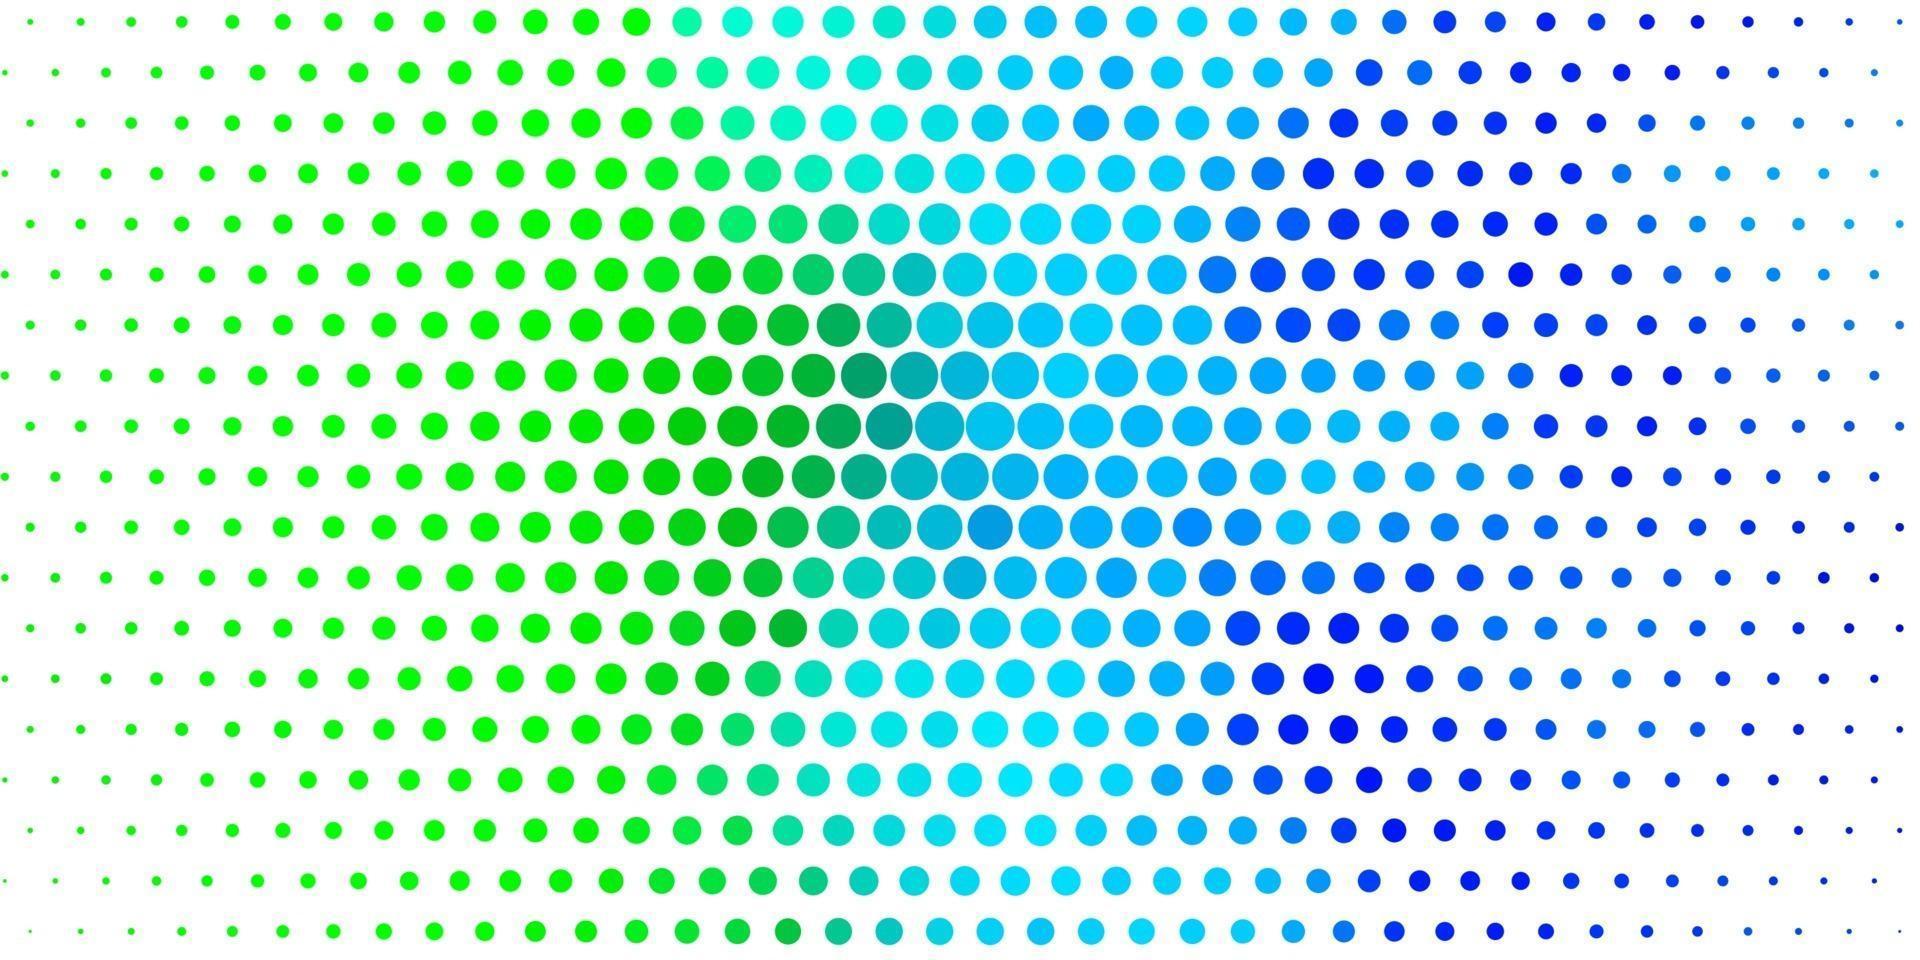 padrão de vetor azul e verde claro com esferas.